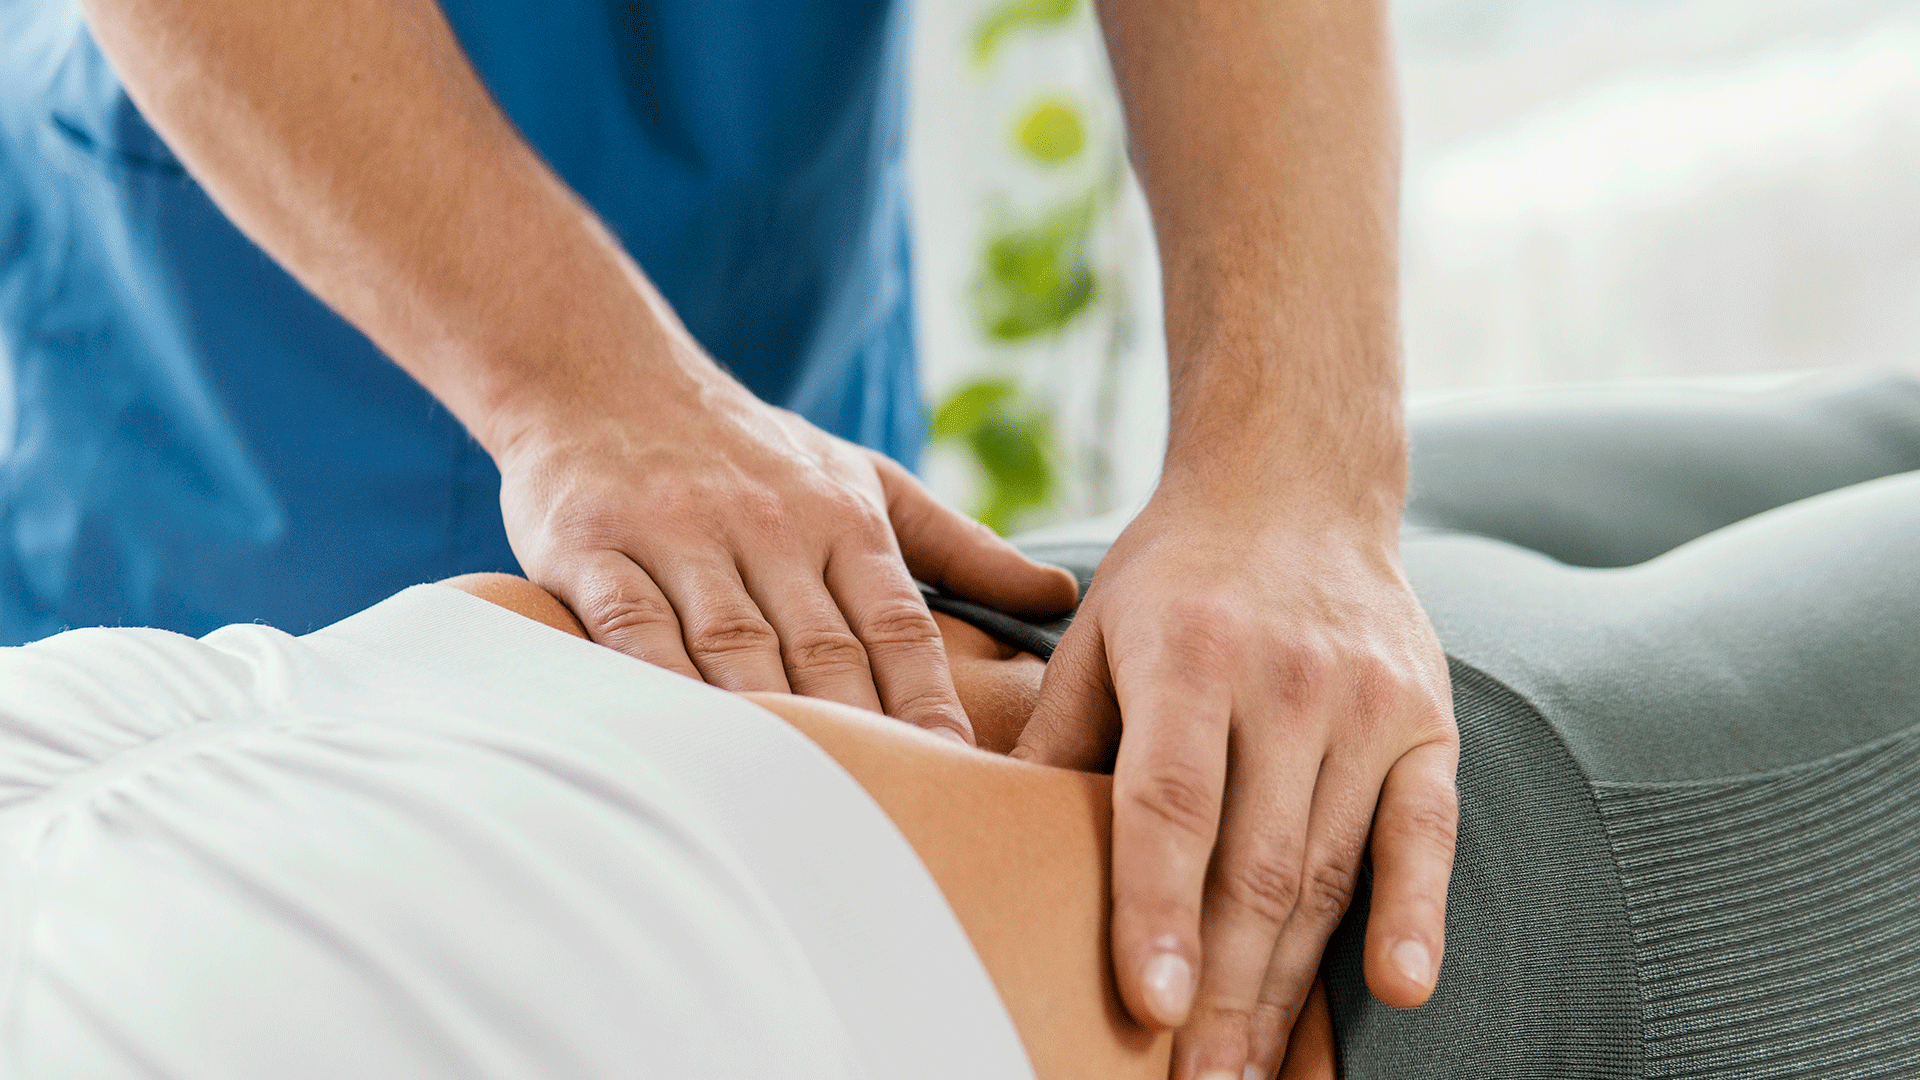 fisio Fernando Arco realizando masaje de Distensión Abdominal en Clínica de fisioterapia Fernando Arco Centro de Fisioterapia